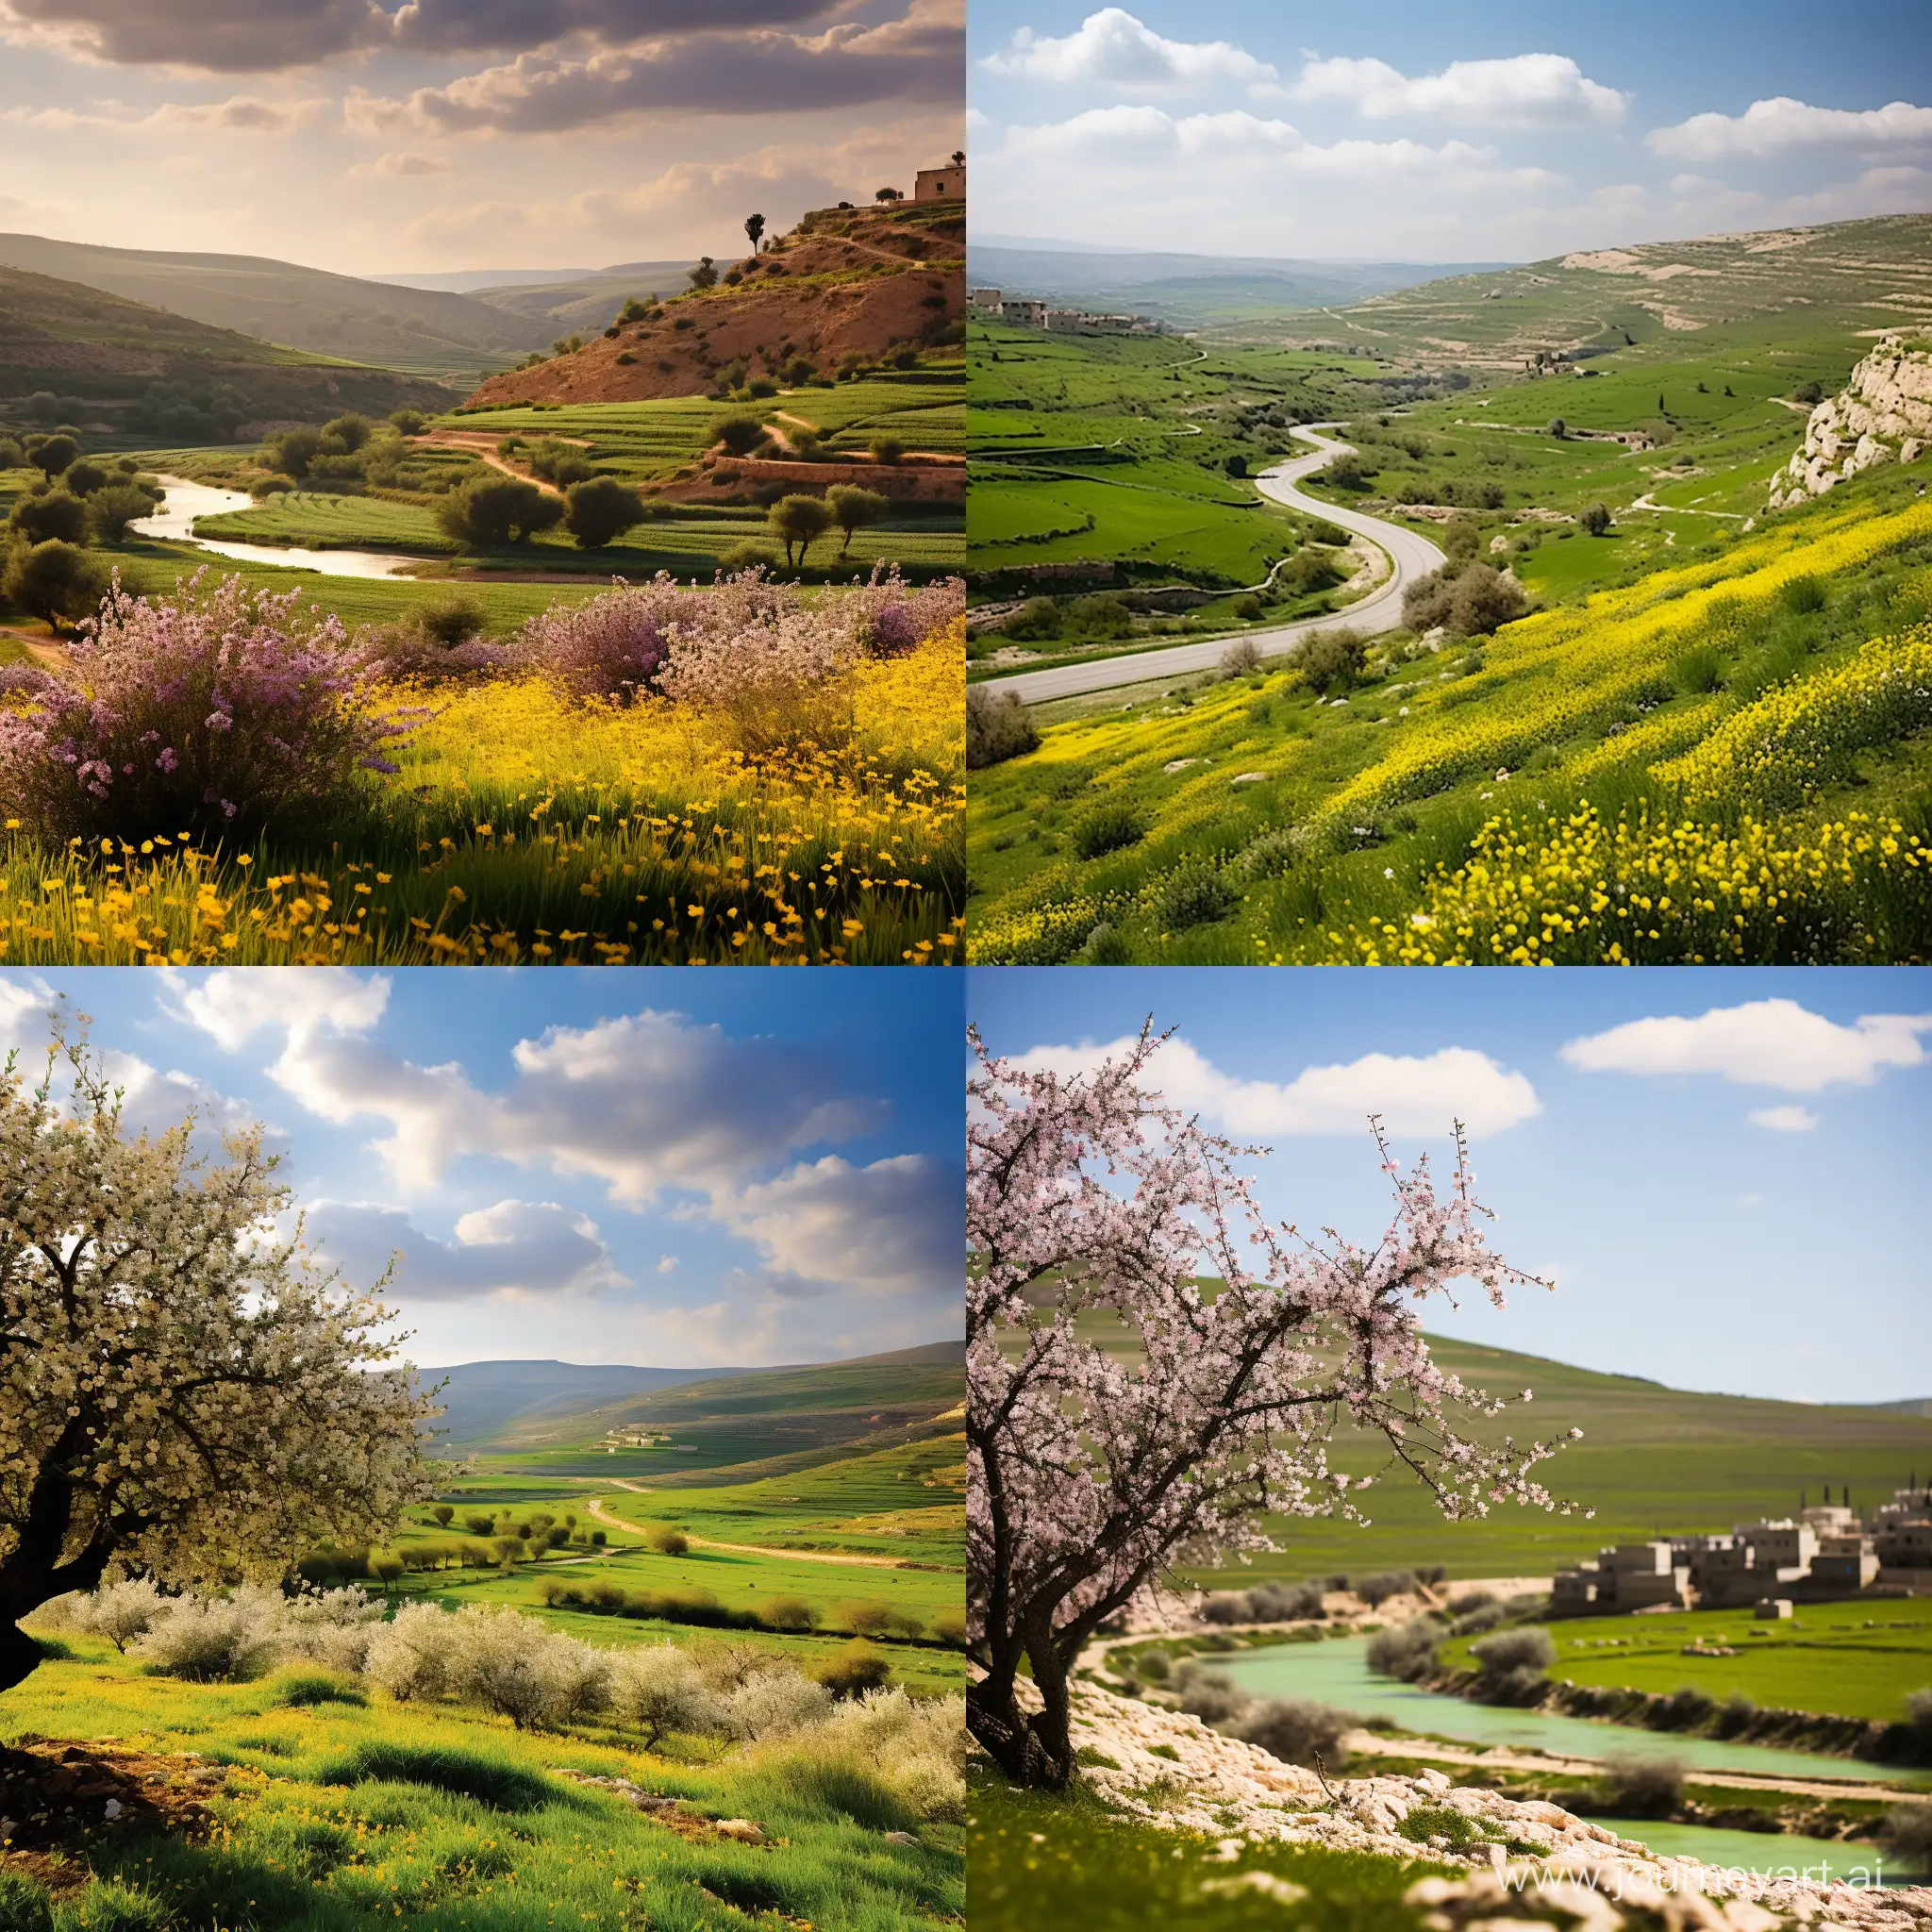 الريف الفلسطيني حيث تتجلى السهول الخضراء الممتدة والحقول الملونة بزهور الربيع. يتخللها أنهار وعيون تضفي جمالاً طبيعياً، وتتناغم مع الزراعة المتنوعة، وخاصة الزيتون، الذي يمثل جزءاً لا يتجزأ من هويته. تتناغم أشجار الزيتون مع البساتين المتناثرة، ويزين المشهد بيوت ريفية تعبر عن التراث والبساطة، فيما يعكس هدوء الحياة في الريف الفلسطيني توازناً رائعاً بين الطبيعة والثقافة